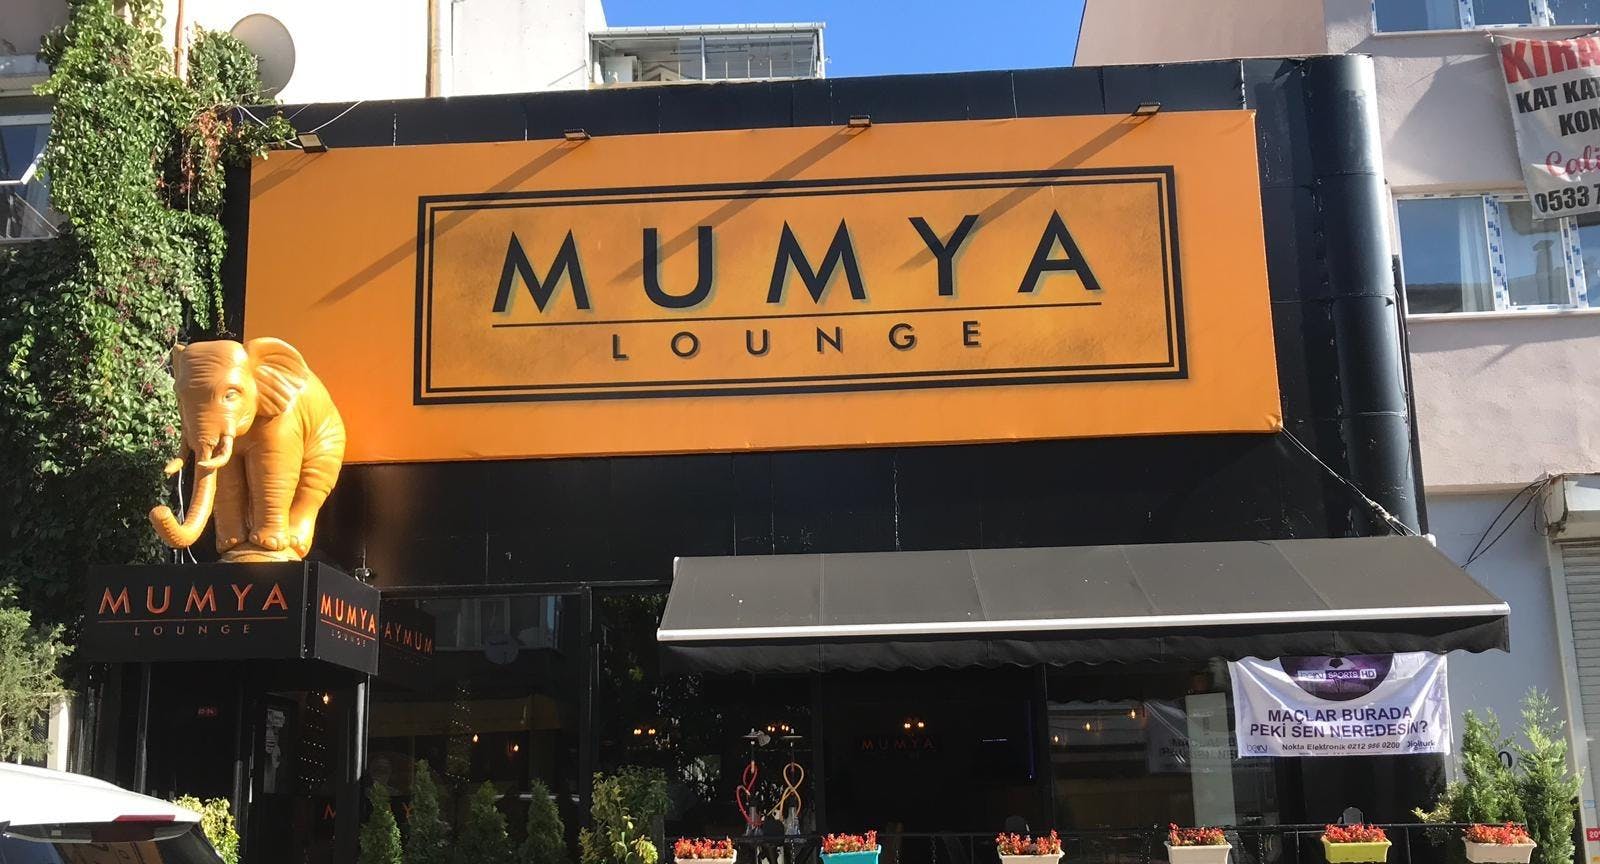 Beşiktaş, Istanbul şehrindeki Mumya Lounge Cafe Restaurant restoranının fotoğrafı